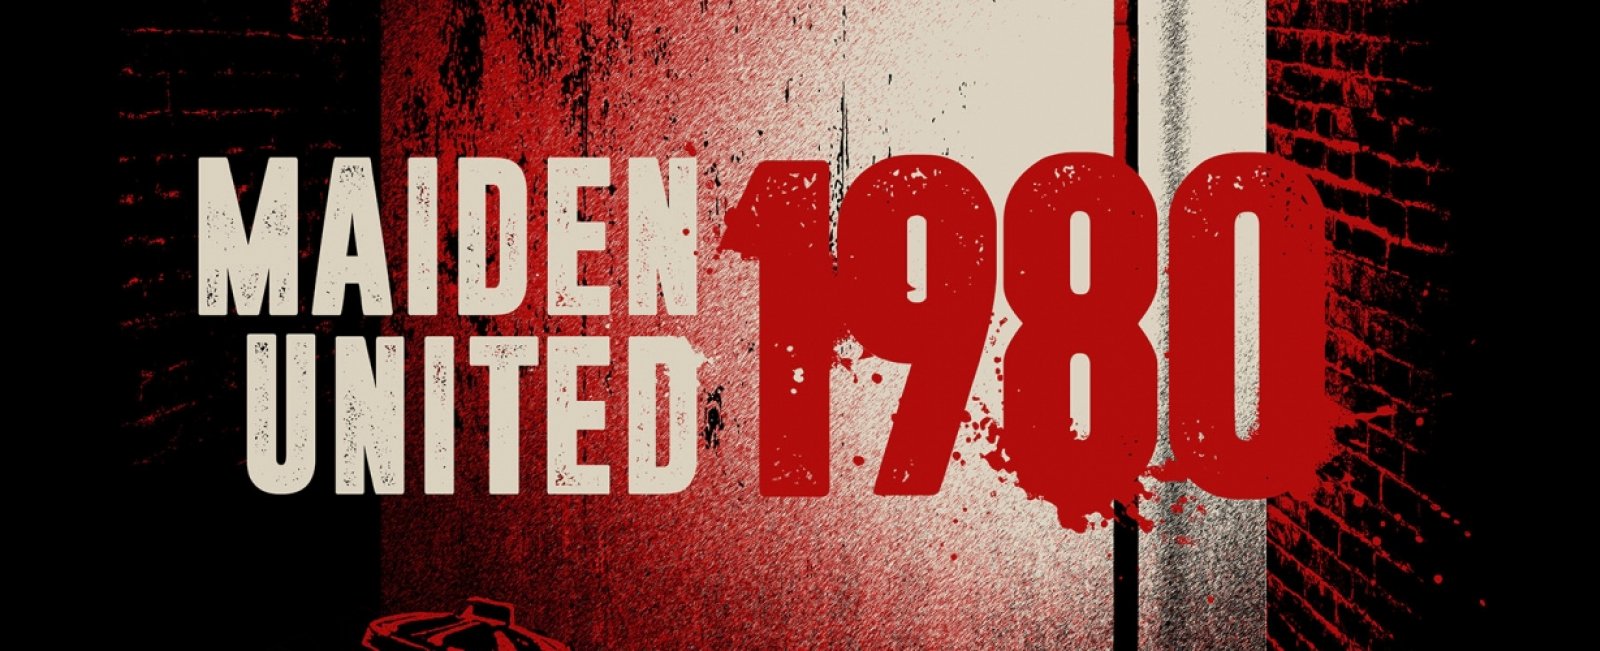 Maiden uniteD: 1980